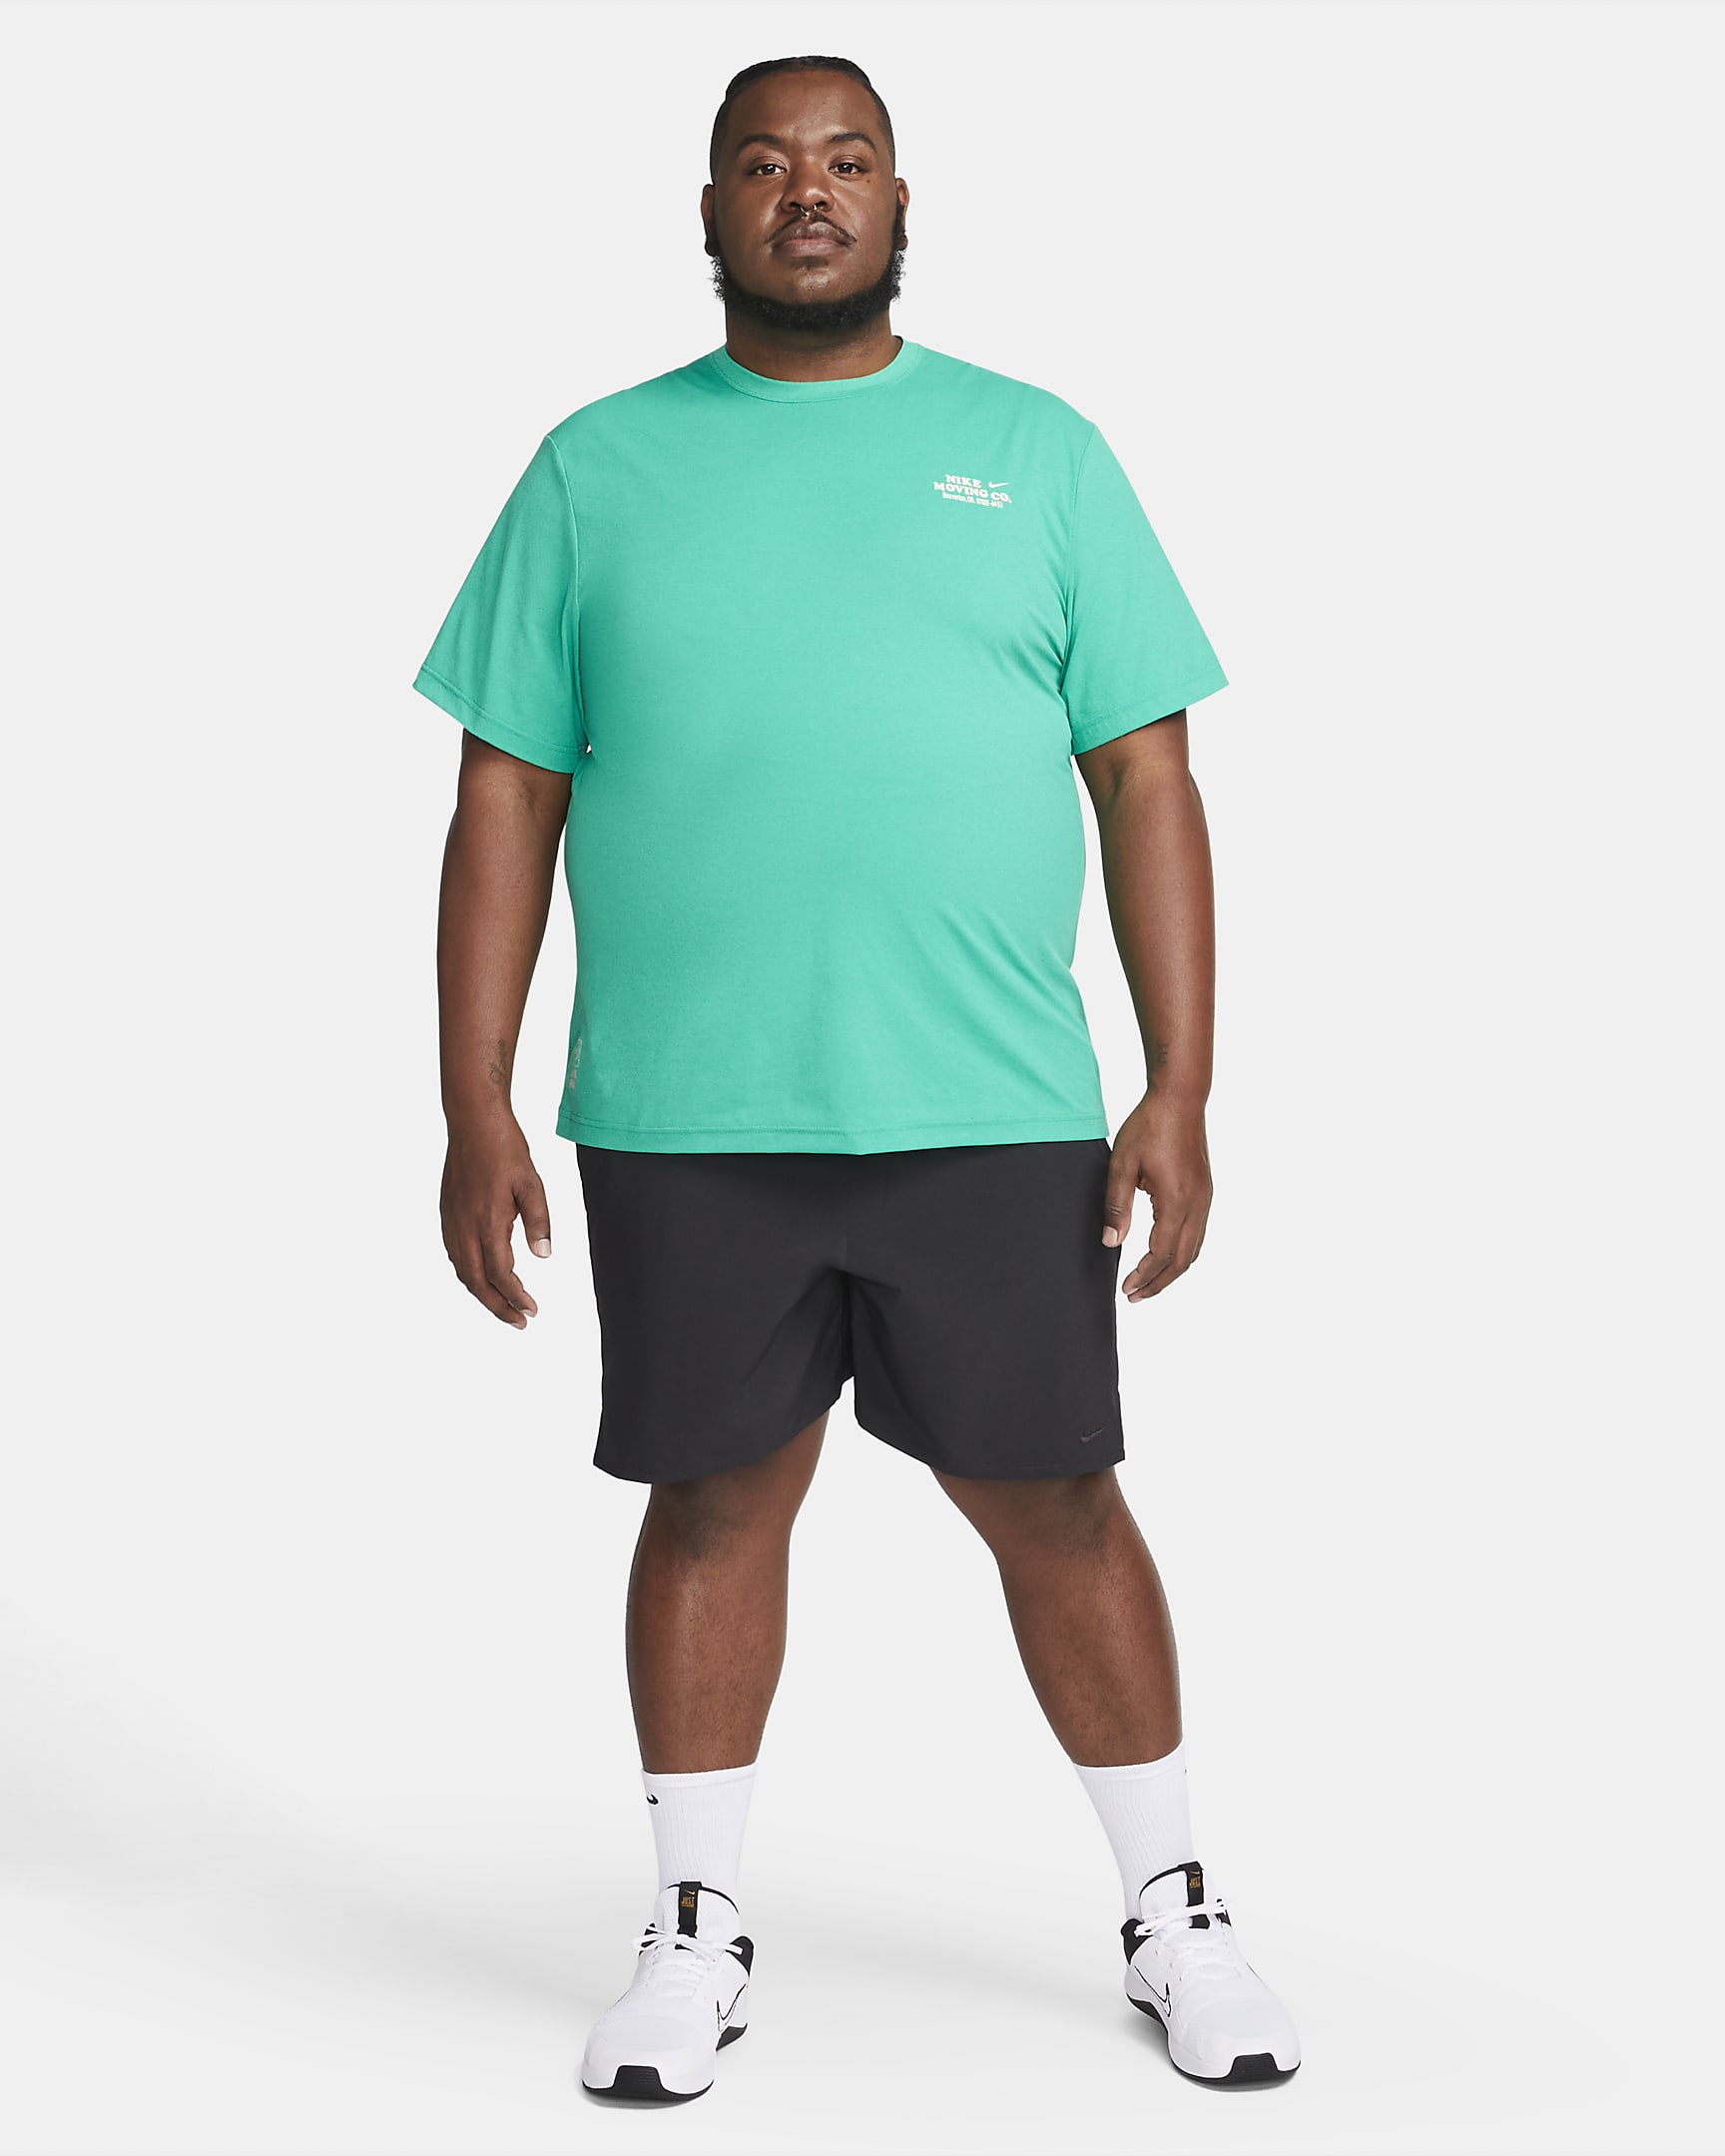 Nike Unlimited Men's Dri-FIT 7